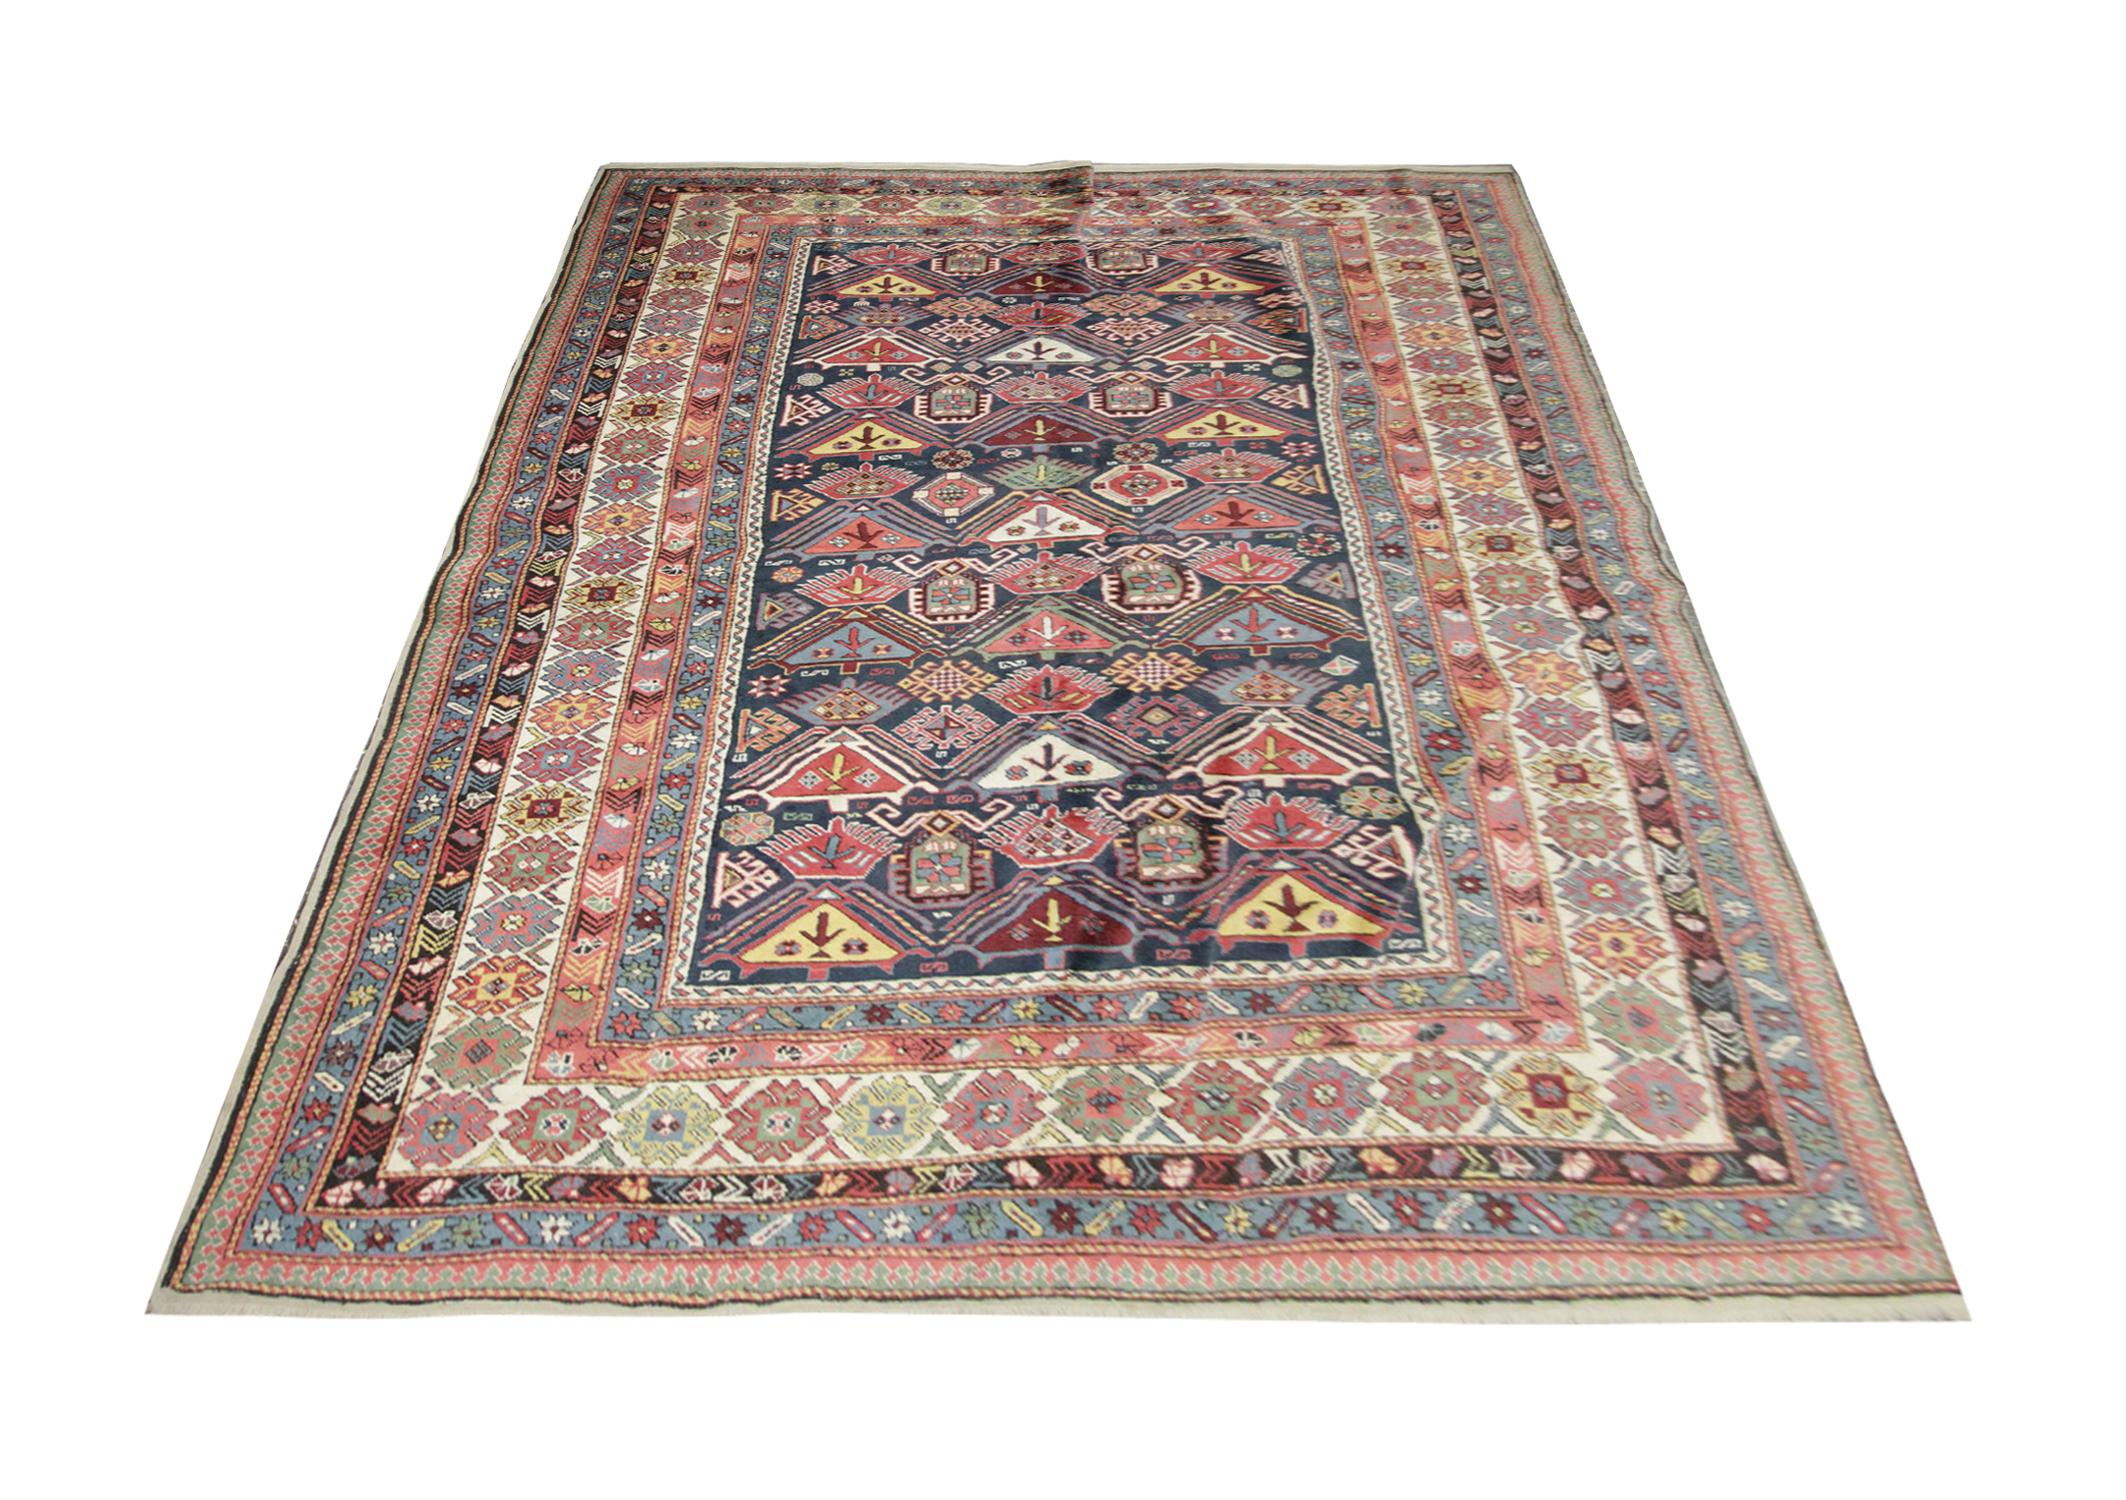 Ce tapis oriental provient de Shirvan, en Azerbaïdjan. Il a été tissé à la main avec de la laine filée à la main et teintée avec des colorants végétaux 100 % biologiques. Avec une bordure multicouche et un motif symétrique, ce tapis se démarquera